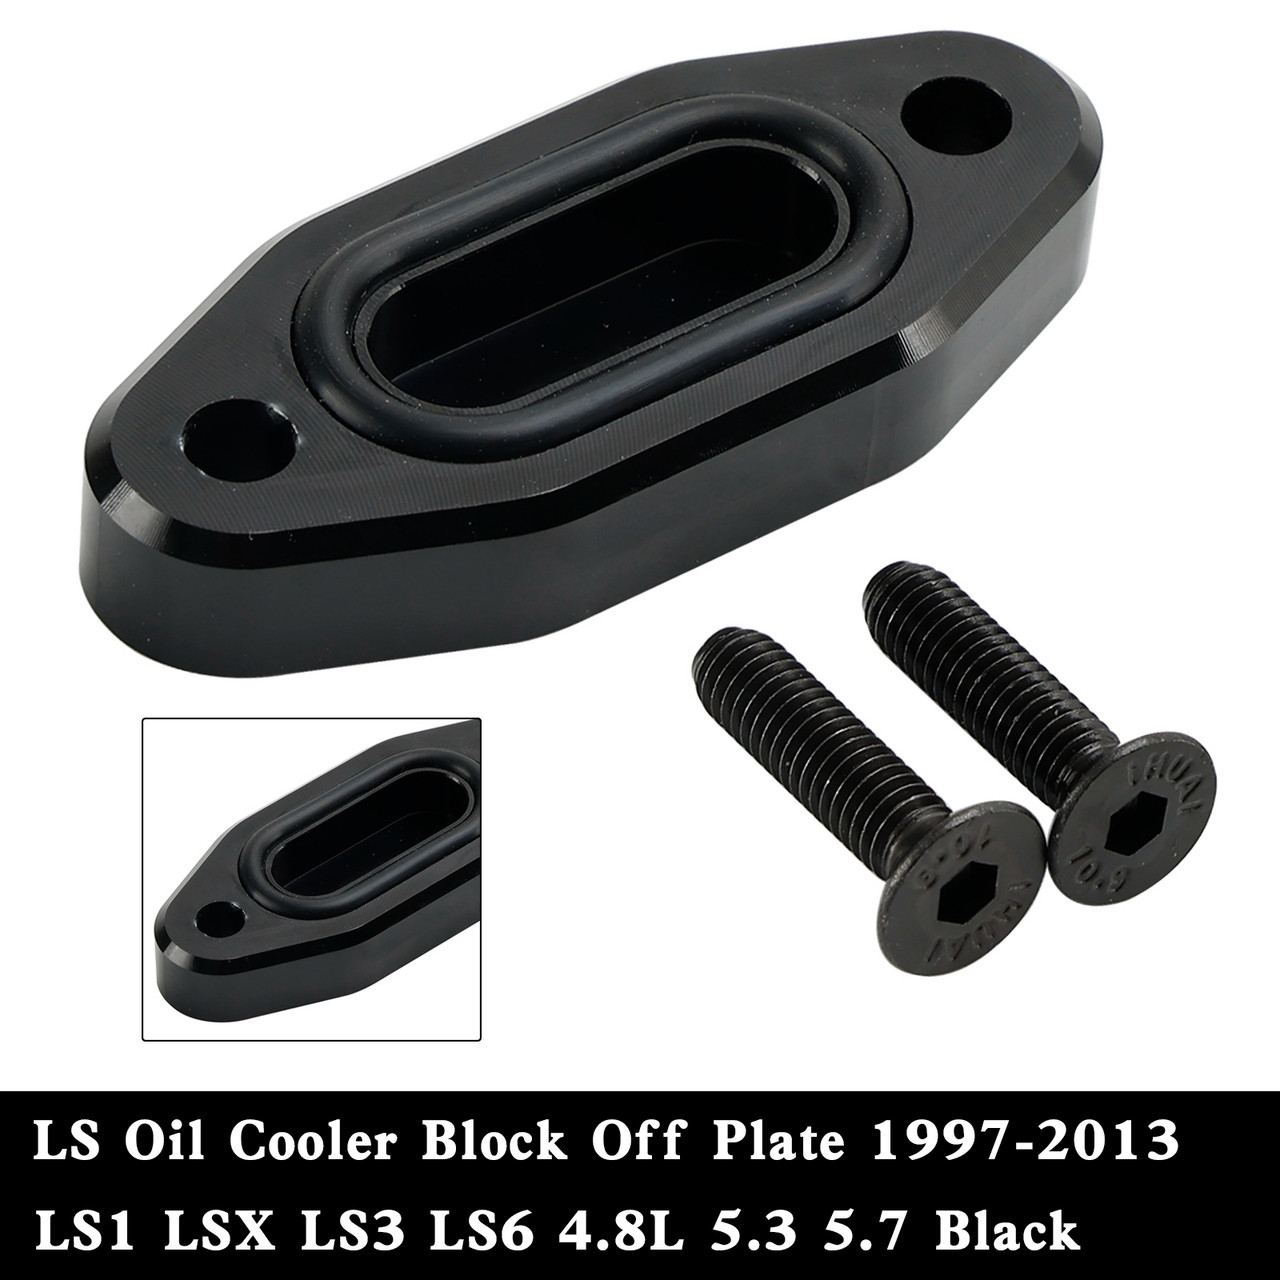 LS Oil Cooler Block Off Plate 1997-2013 LS1 LSX LS3 LS6 4.8L 5.3 5.7  BLK